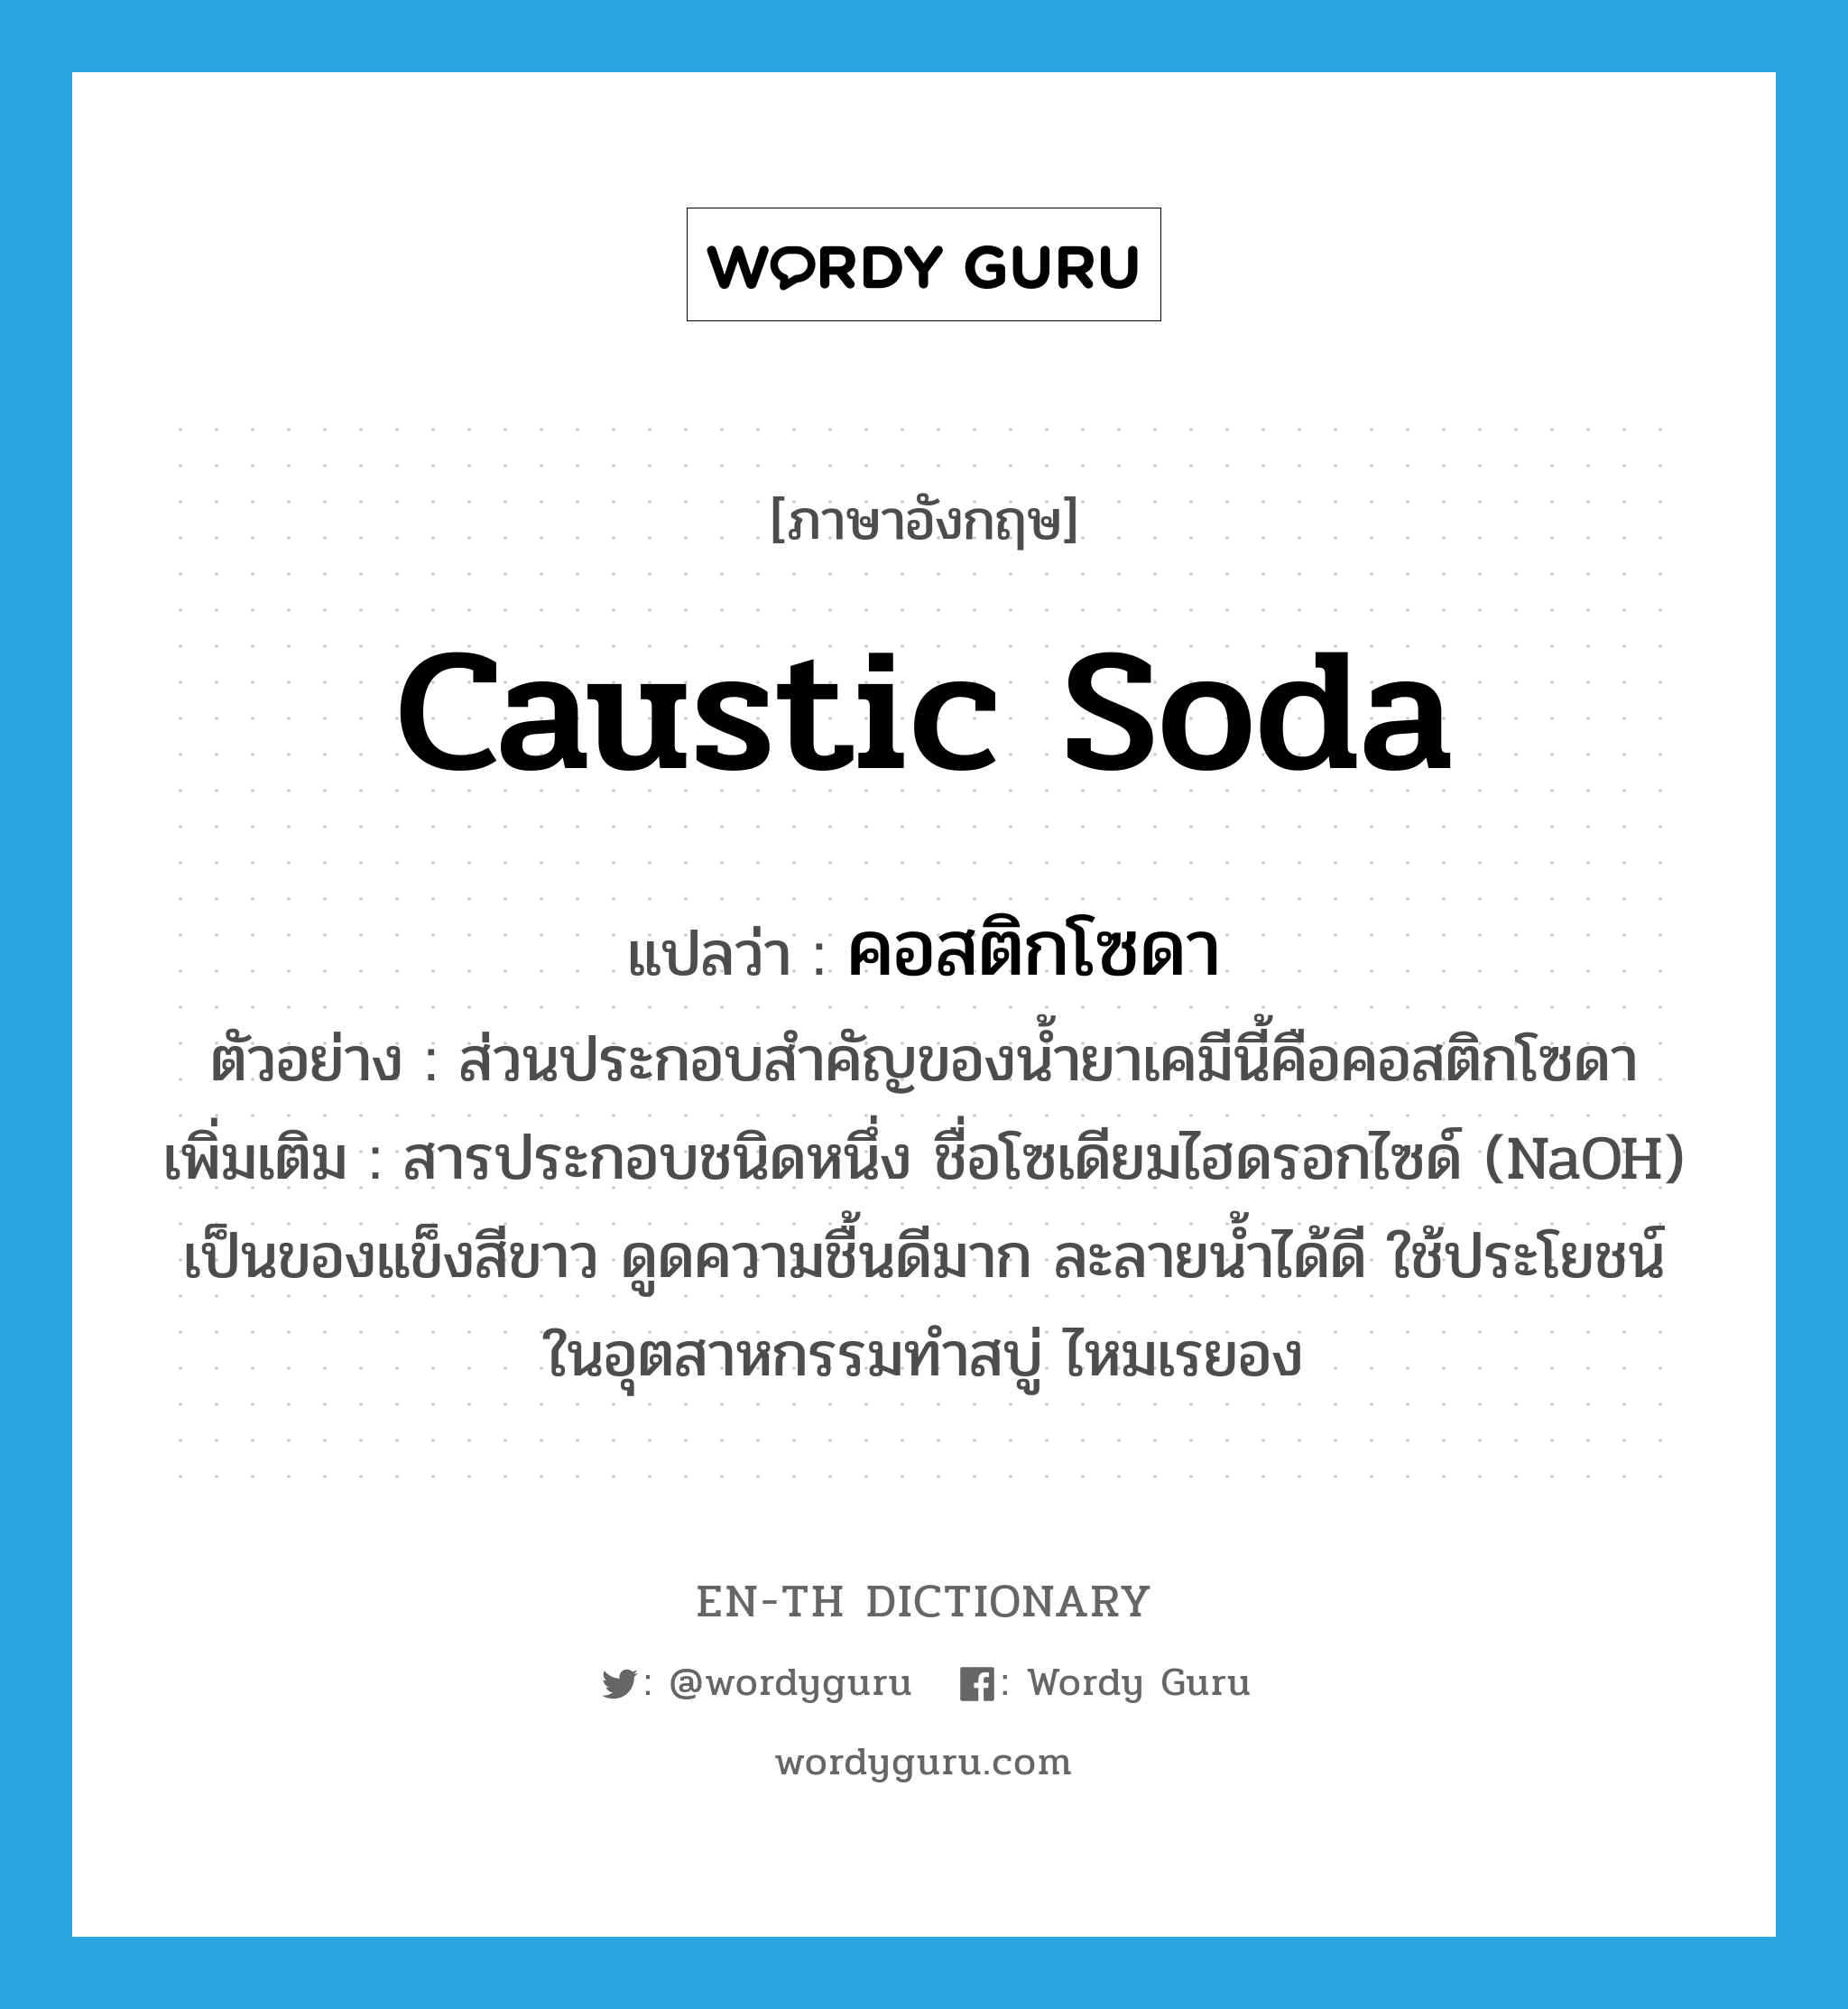 caustic soda แปลว่า?, คำศัพท์ภาษาอังกฤษ caustic soda แปลว่า คอสติกโซดา ประเภท N ตัวอย่าง ส่วนประกอบสำคัญของน้ำยาเคมีนี้คือคอสติกโซดา เพิ่มเติม สารประกอบชนิดหนึ่ง ชื่อโซเดียมไฮดรอกไซด์ (NaOH) เป็นของแข็งสีขาว ดูดความชื้นดีมาก ละลายน้ำได้ดี ใช้ประโยชน์ในอุตสาหกรรมทำสบู่ ไหมเรยอง หมวด N